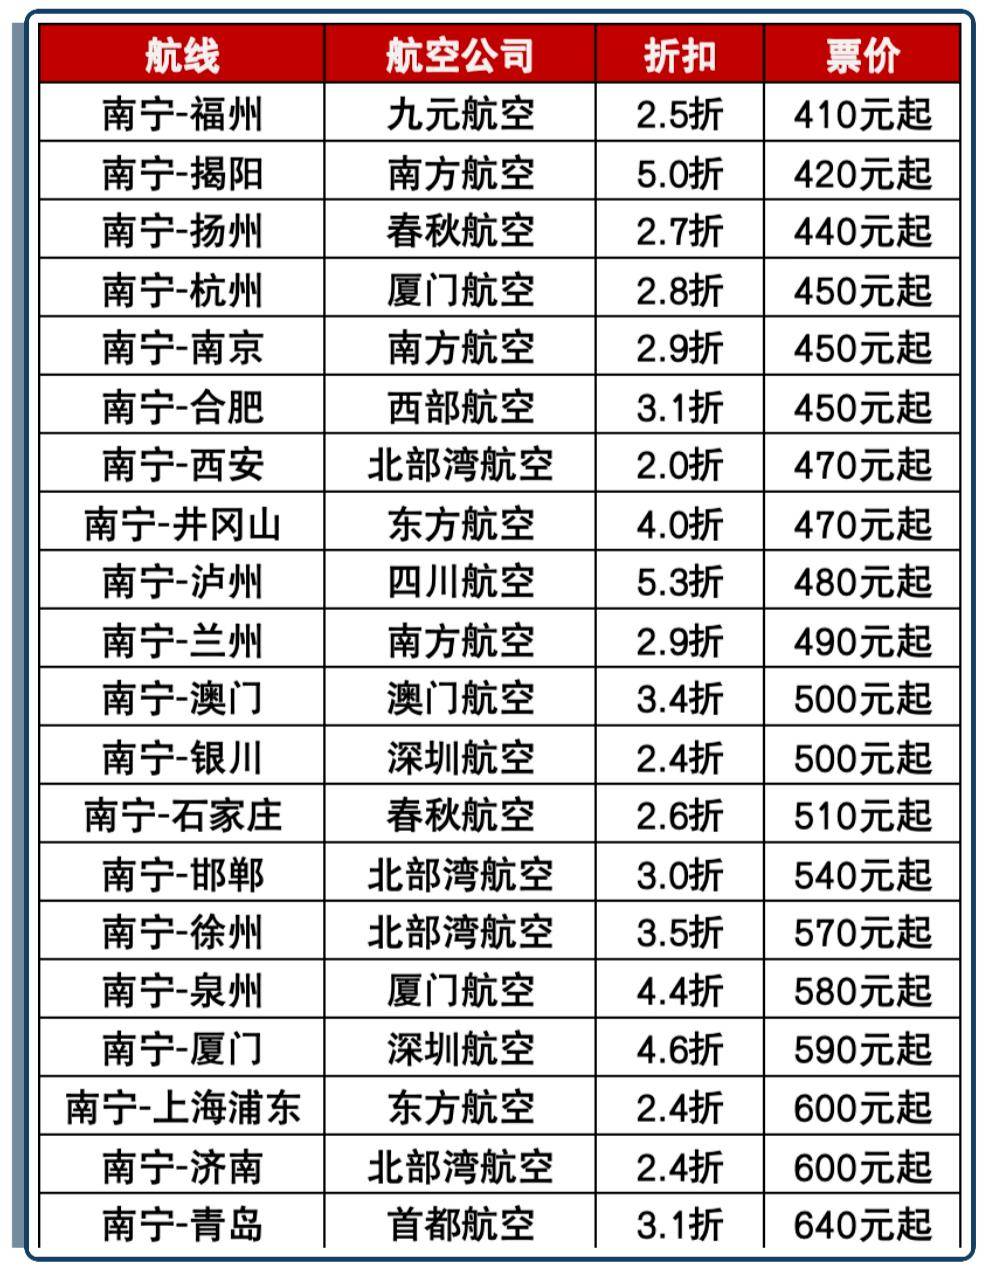 火车票低至19折!南宁→昆明仅22元!